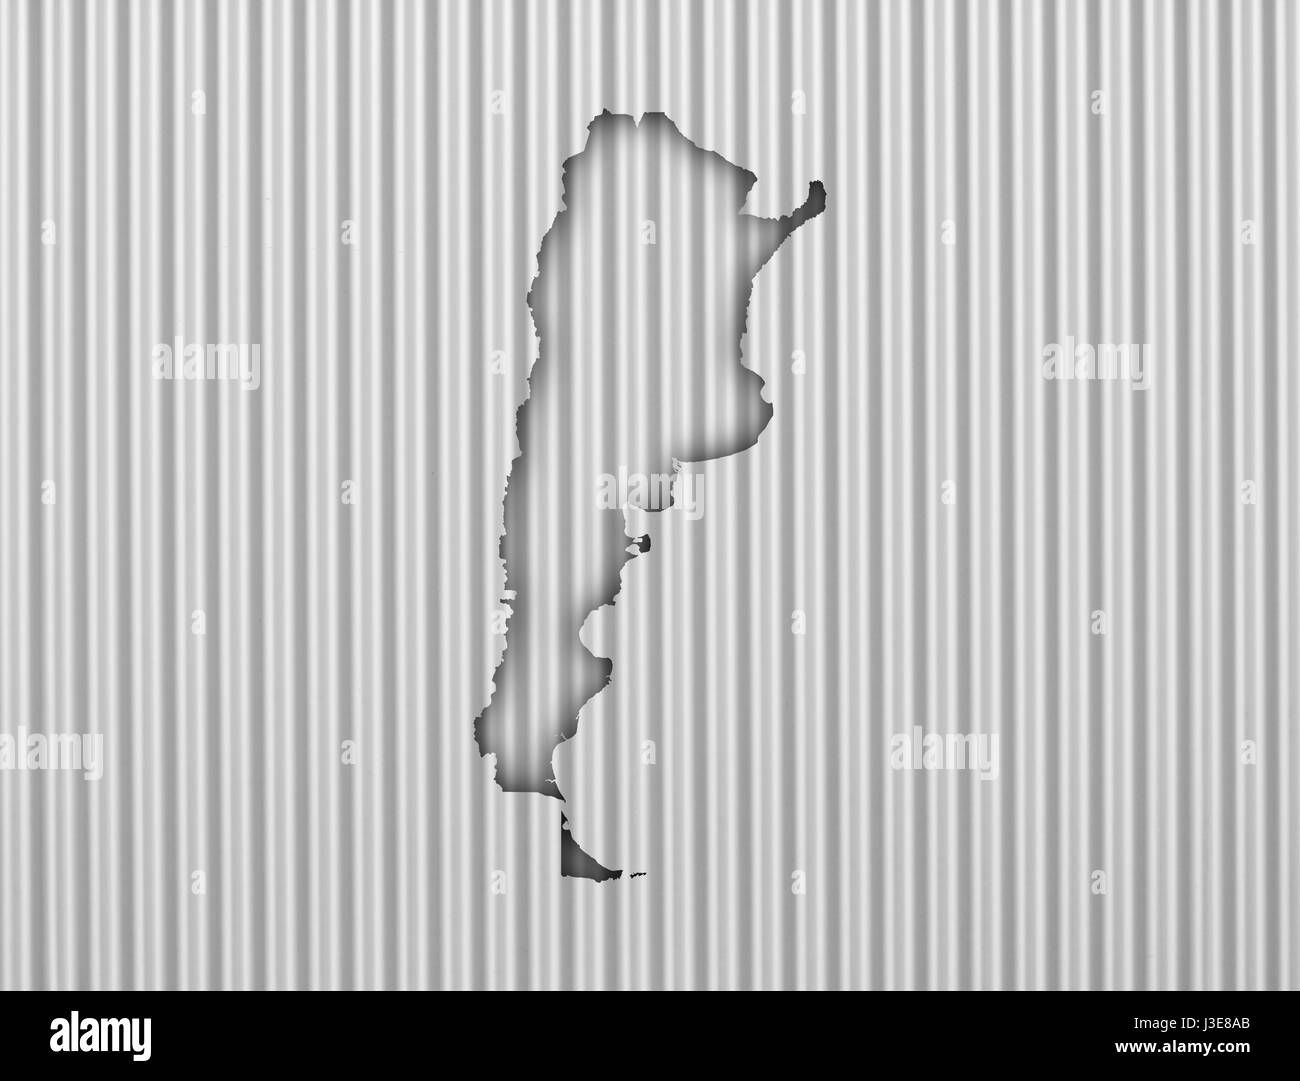 Map of Argentina on corrugated iron Stock Photo